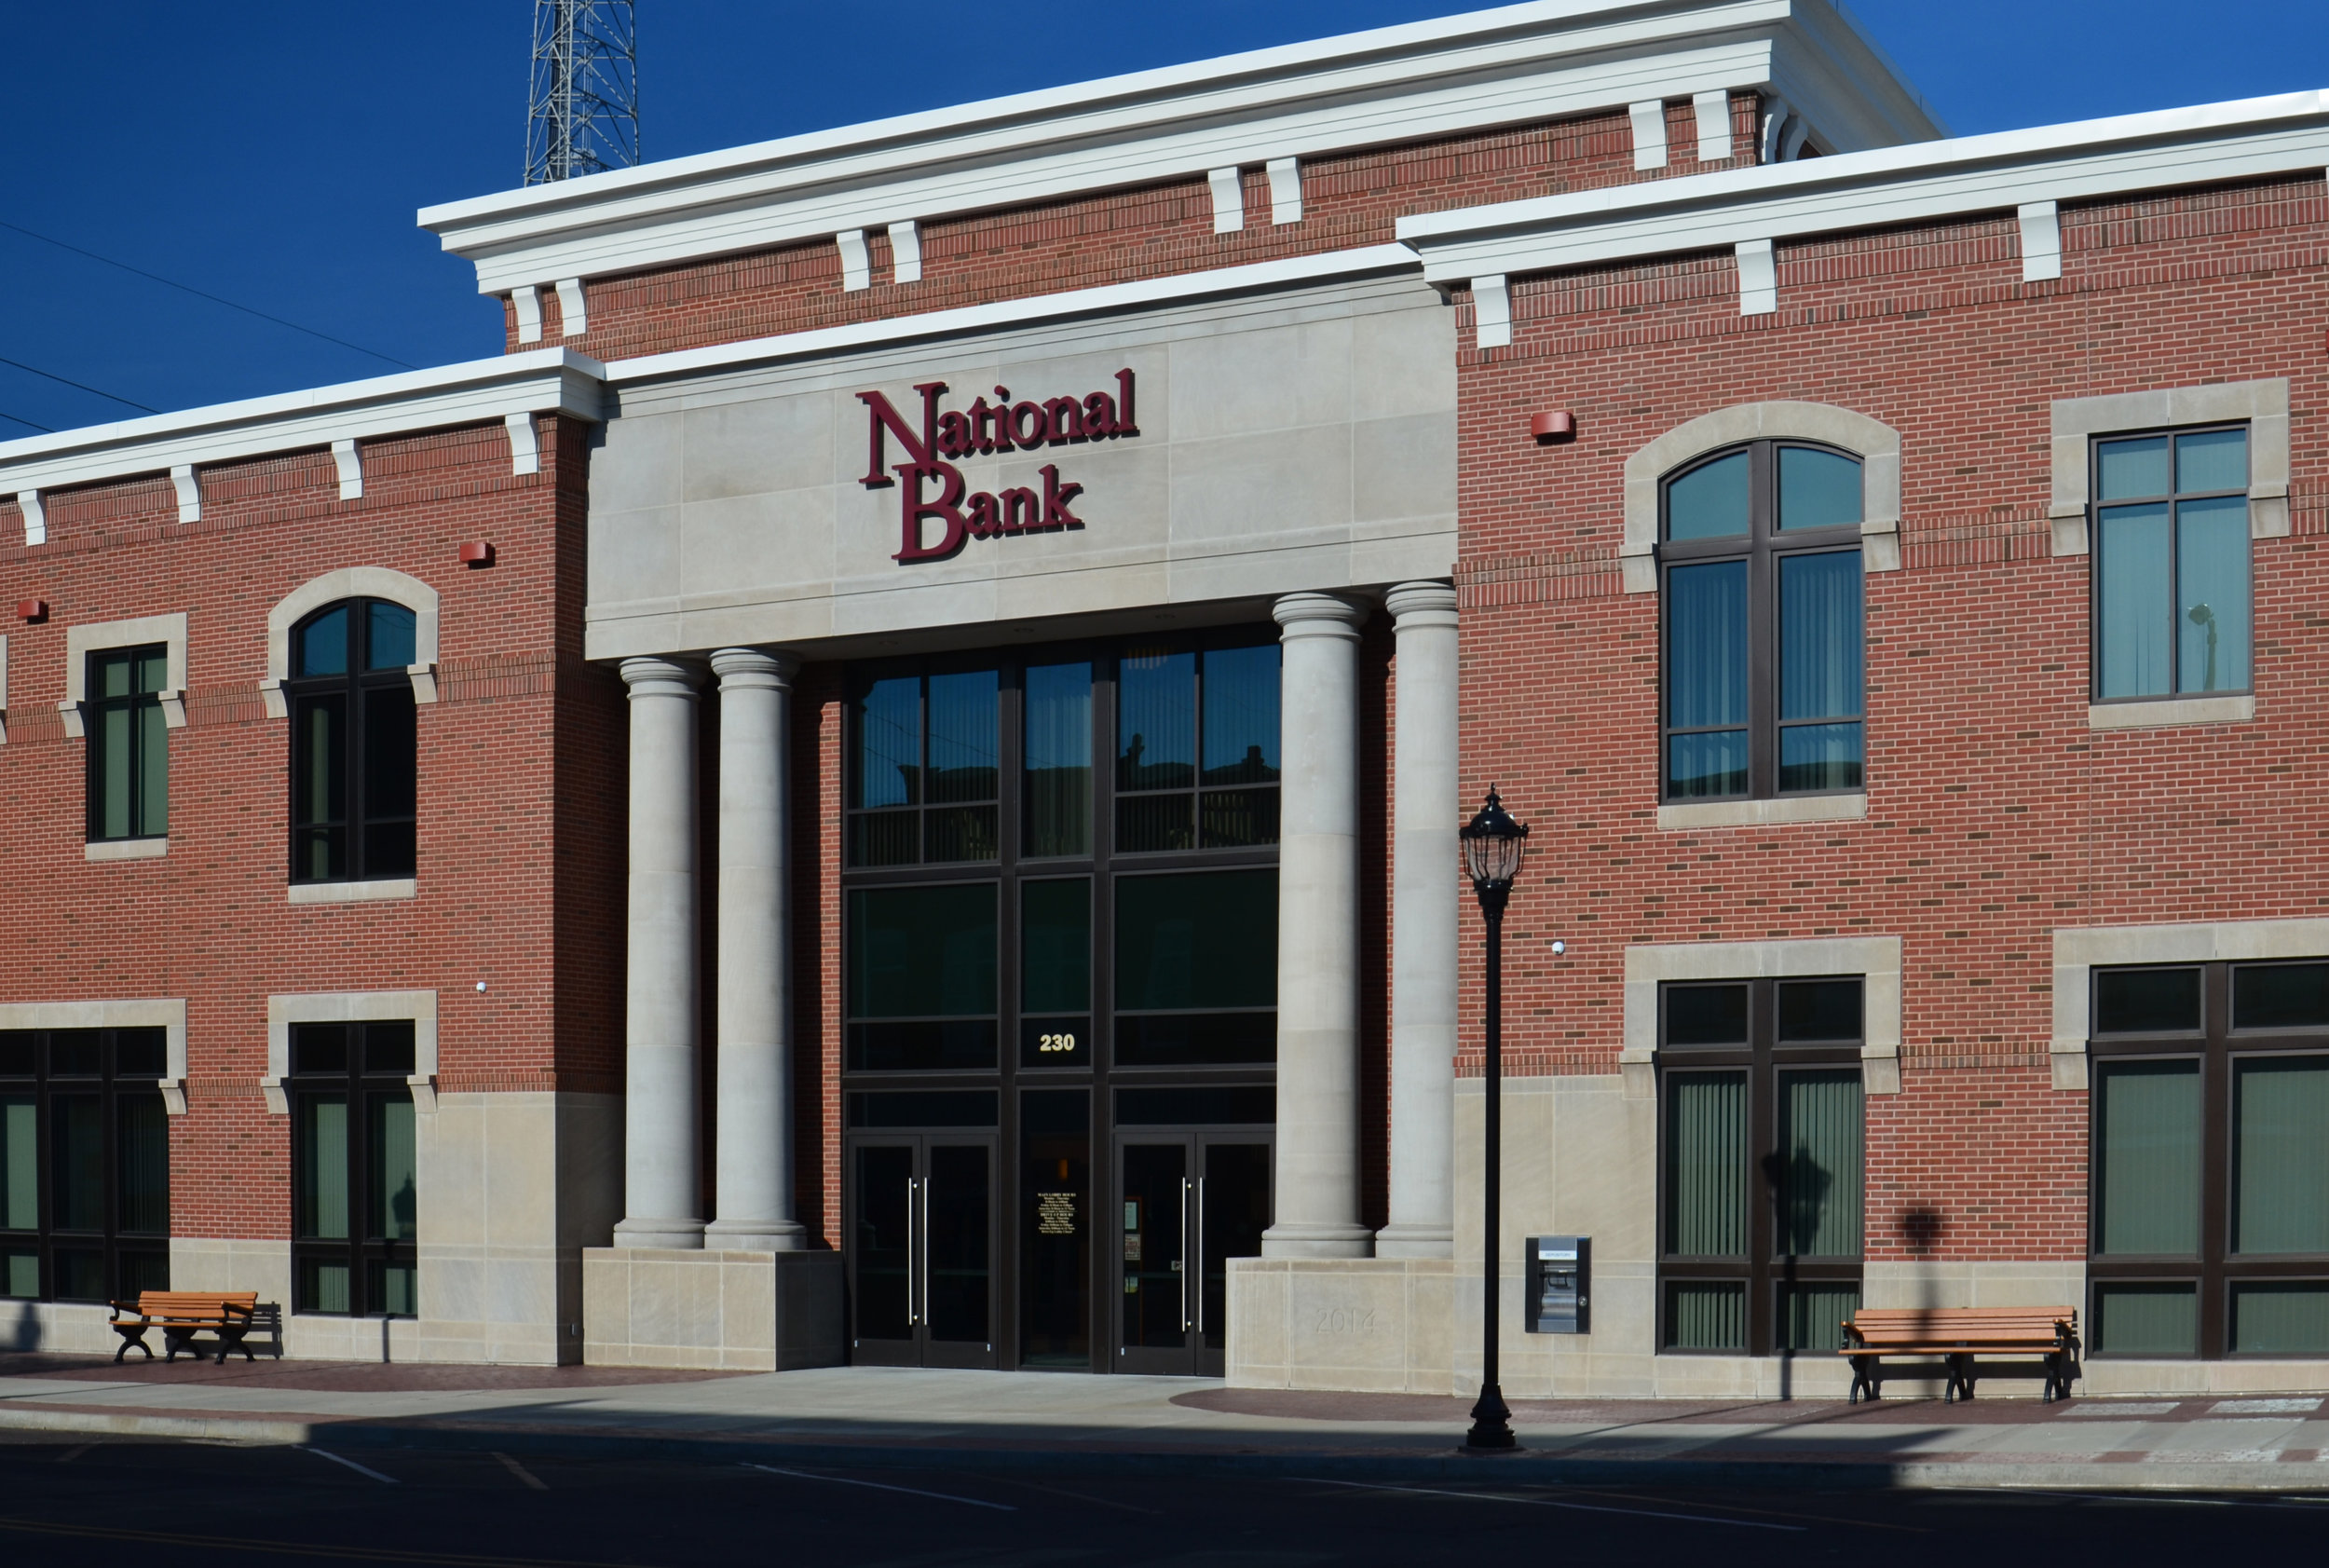 National Bank Exterior (Copy)